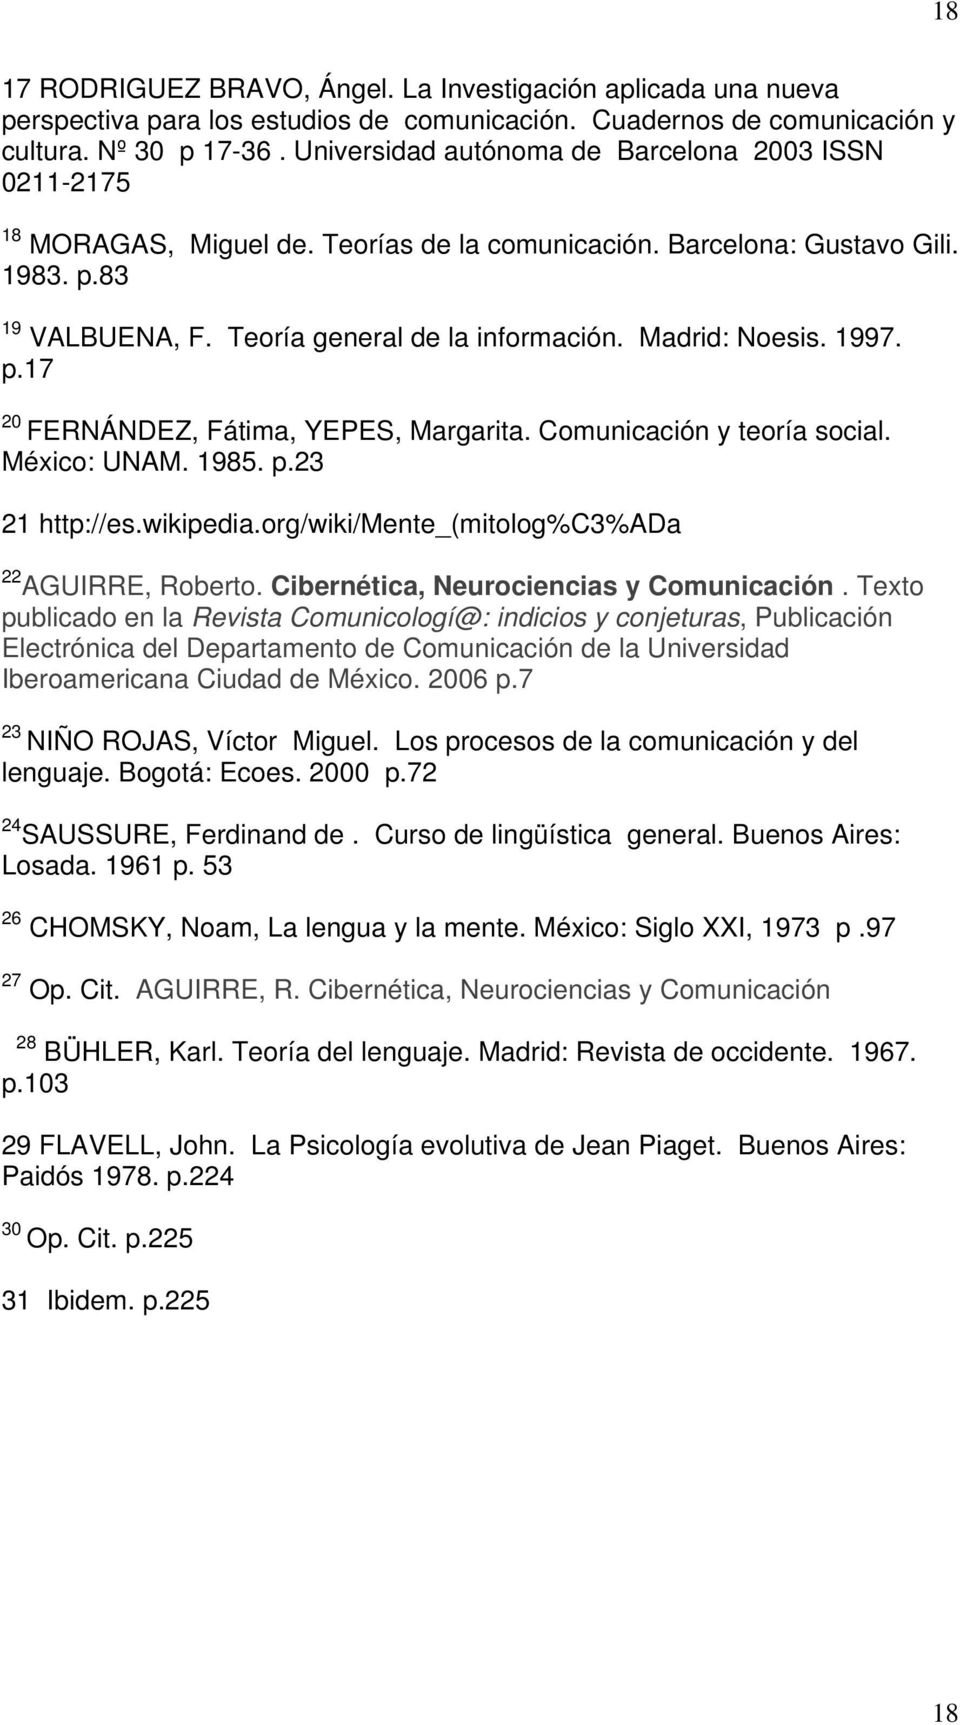 Madrid: Noesis. 1997. p.17 20 FERNÁNDEZ, Fátima, YEPES, Margarita. Comunicación y teoría social. México: UNAM. 1985. p.23 21 http://es.wikipedia.org/wiki/mente_(mitolog%c3%ada 22 AGUIRRE, Roberto.